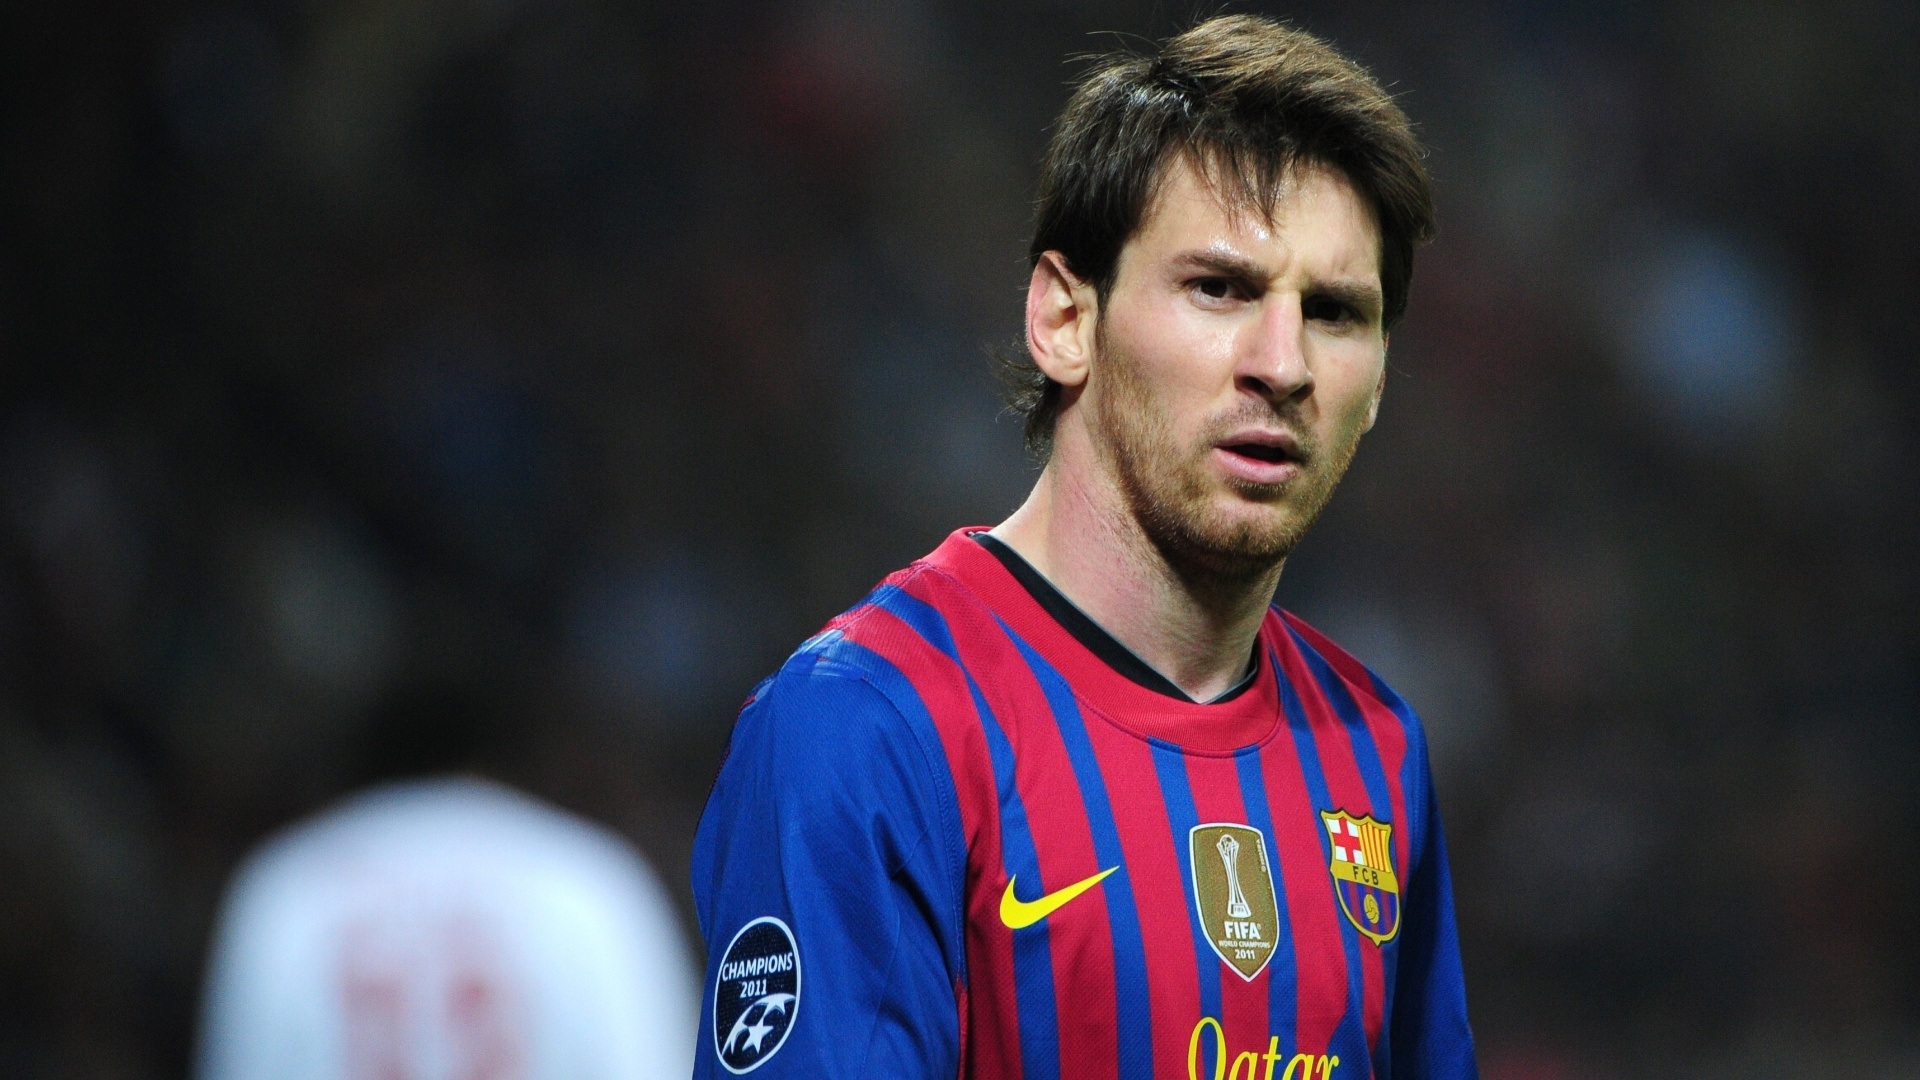 Khát khao chiến thắng và niềm đam mê bóng đá của Lionel Messi được tái hiện chân thật trên chiếc desktop này. Hãy để tấm ảnh nền này khơi gợi nề nếp tinh thần chiến đấu trong bạn!